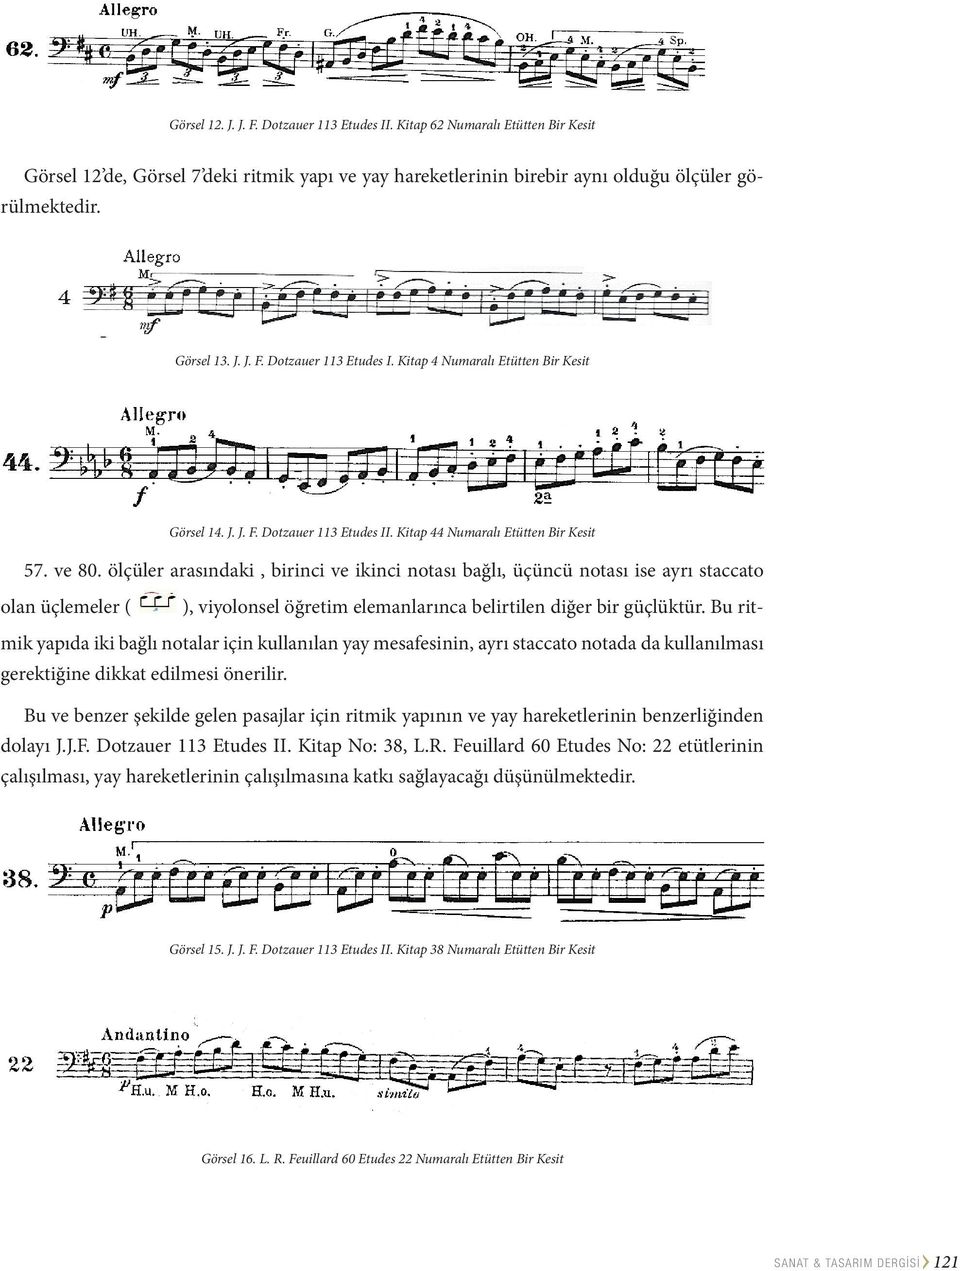 ölçüler arasındaki, birinci ve ikinci notası bağlı, üçüncü notası ise ayrı staccato olan üçlemeler ( ), viyolonsel öğretim elemanlarınca belirtilen diğer bir güçlüktür.